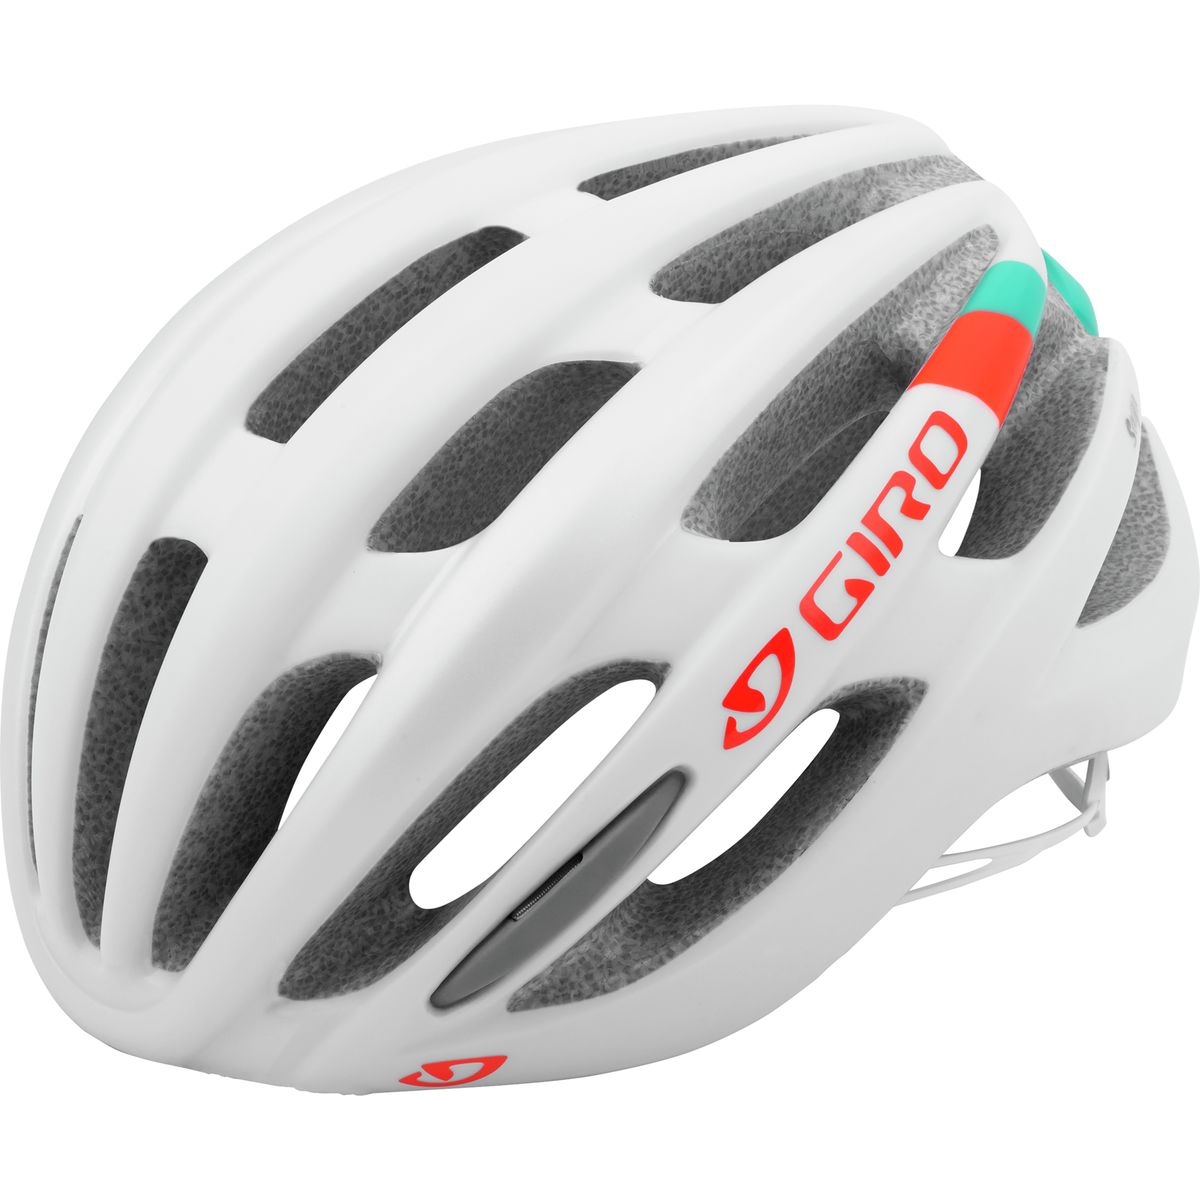 Giro Saga Helmet Women's